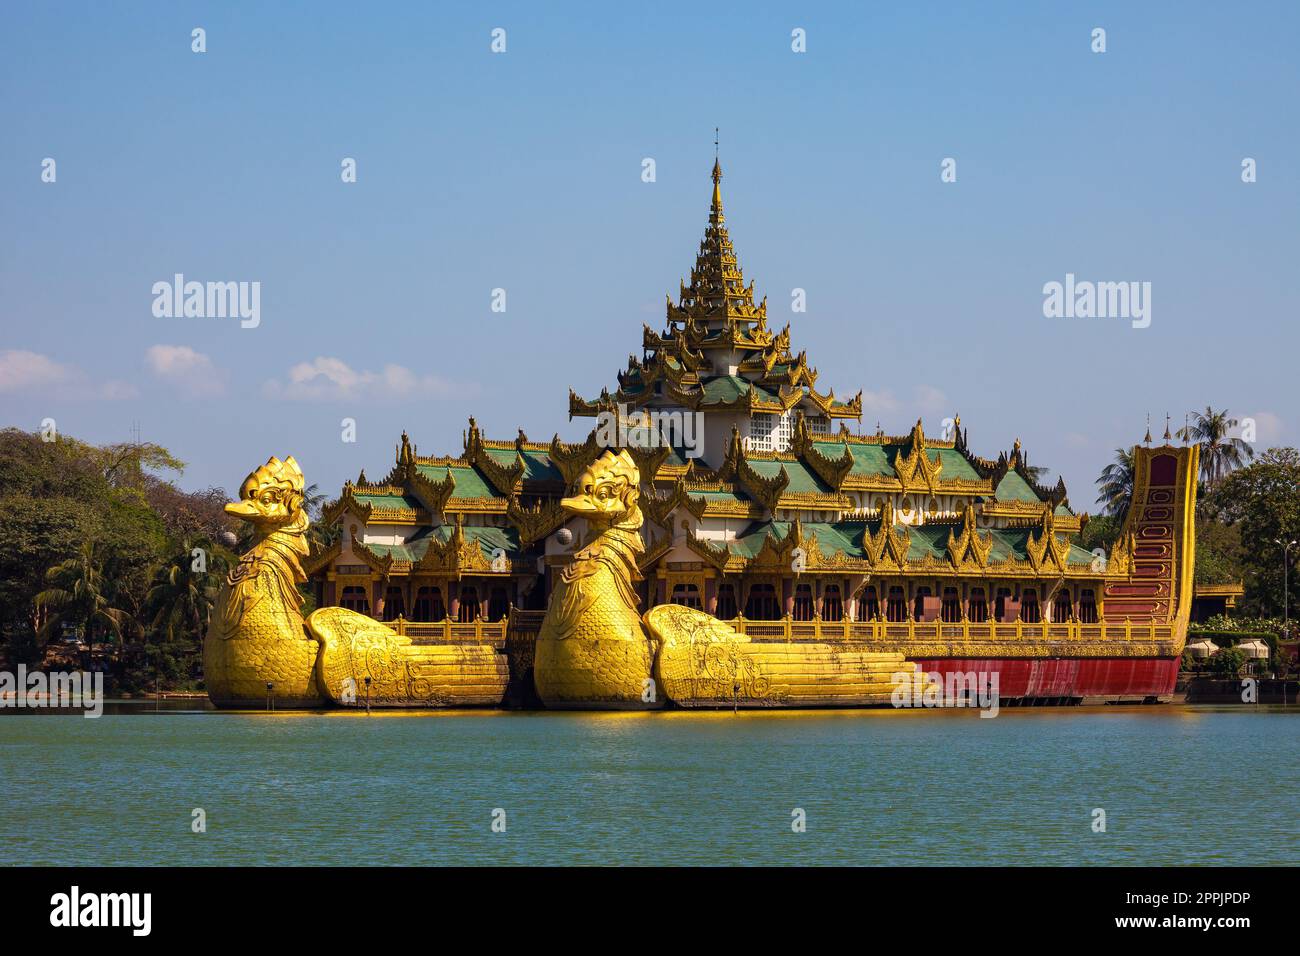 La barge royale de Rangoon Myanmar Banque D'Images